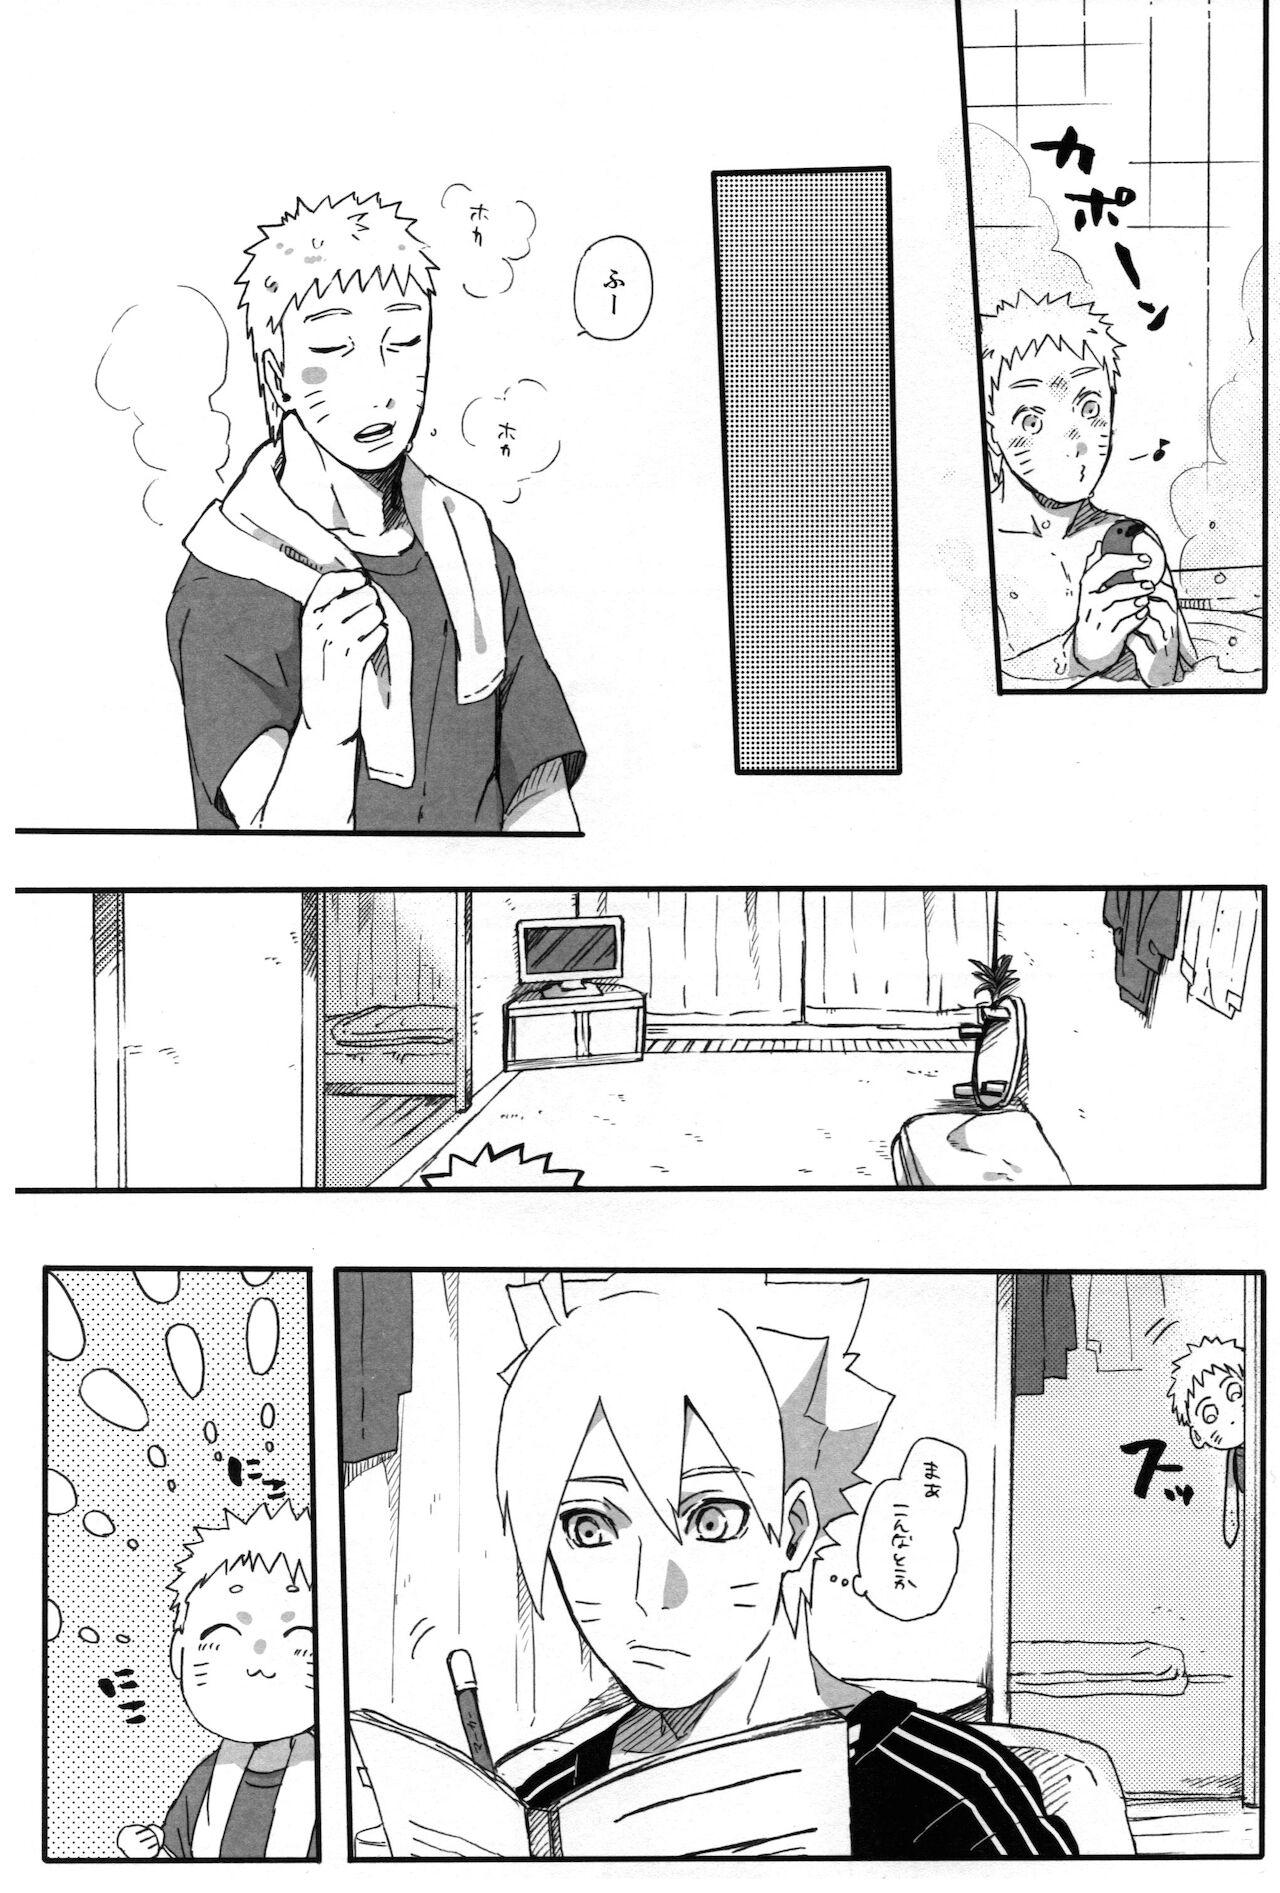 Trans Getsuyou wa itsumo chikoku sunzen - Naruto Outdoors - Page 12